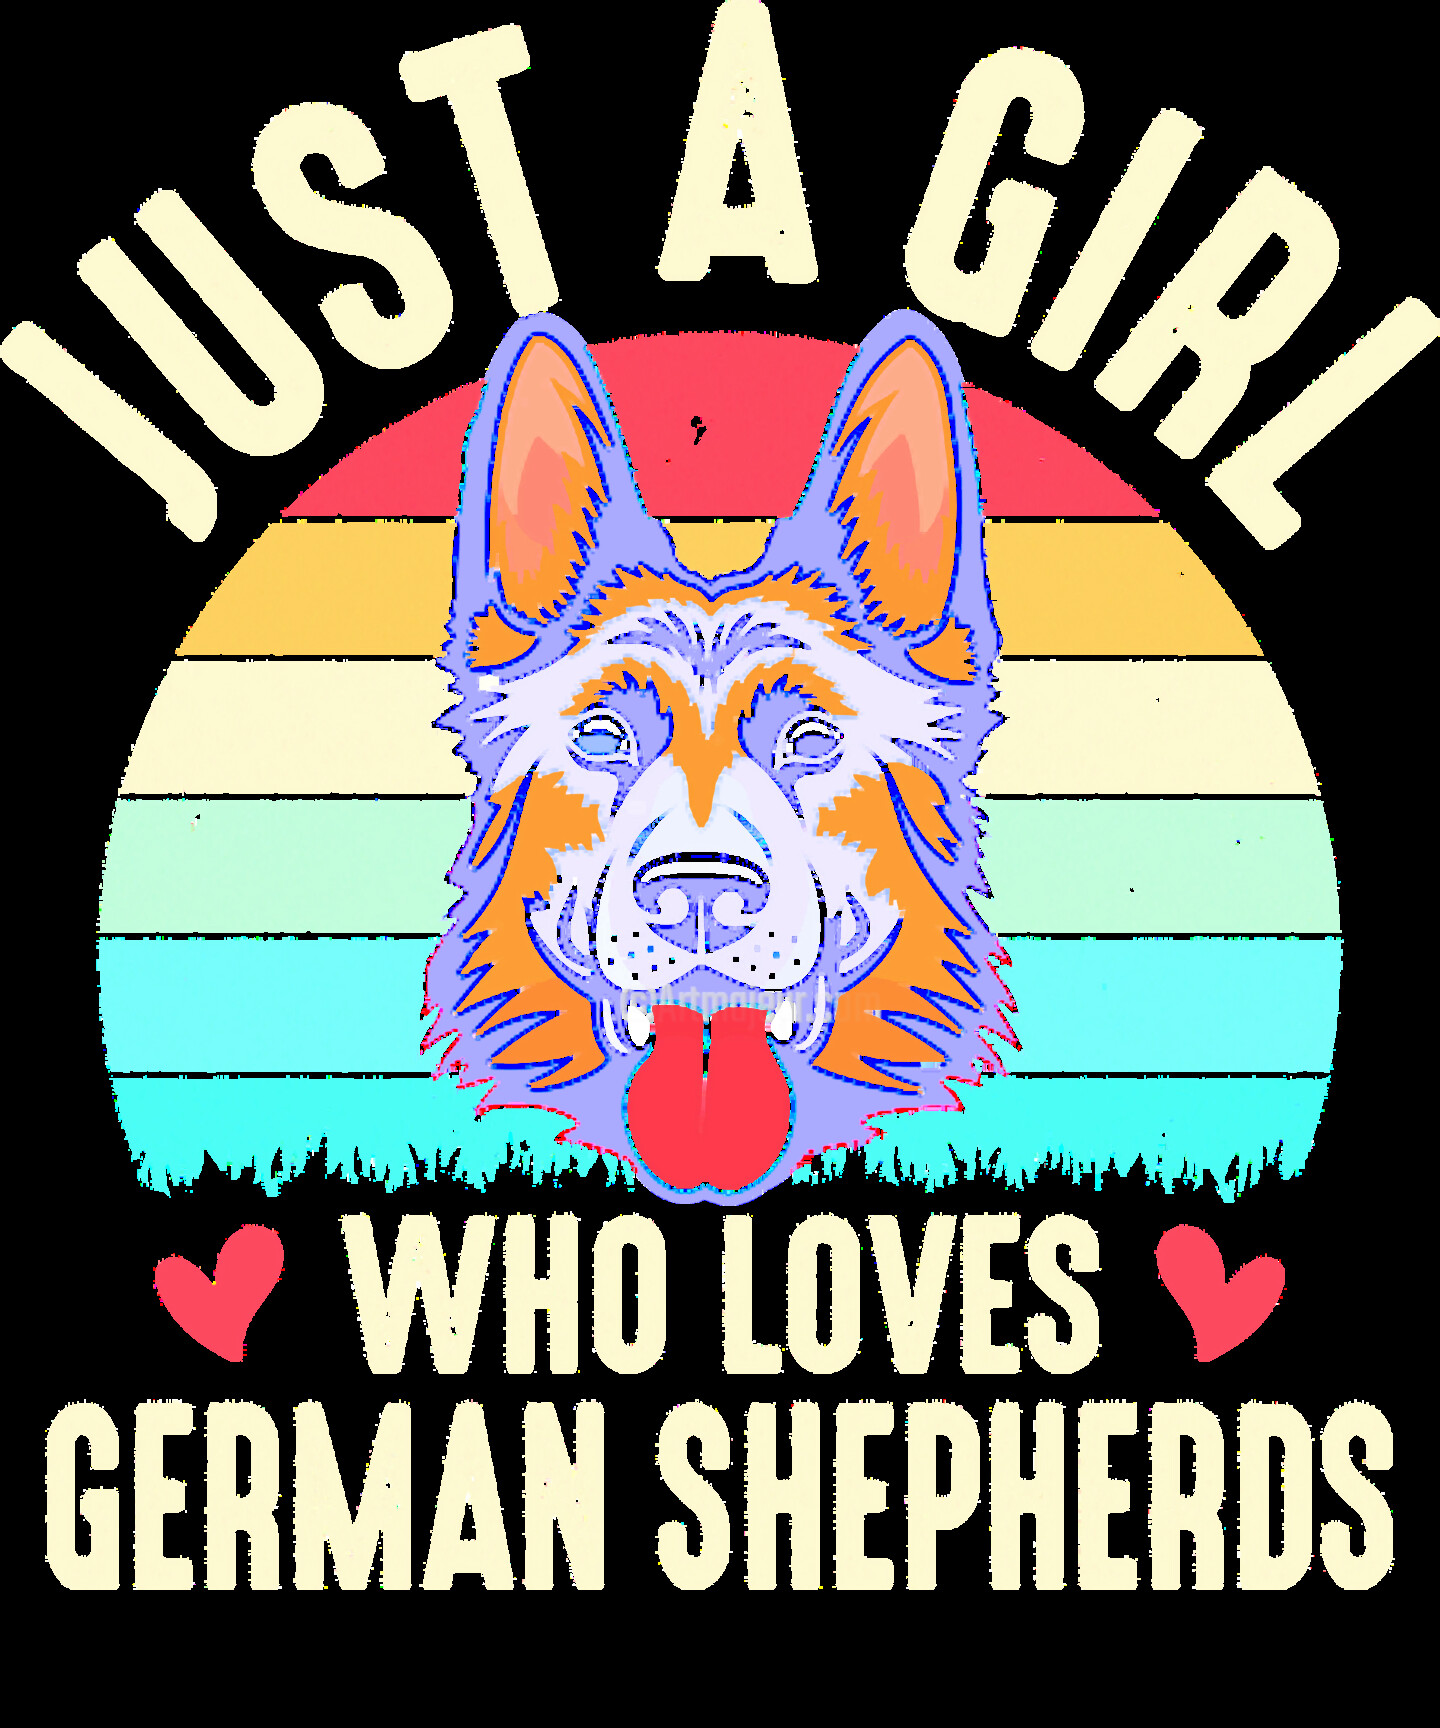 Just German Shepherds